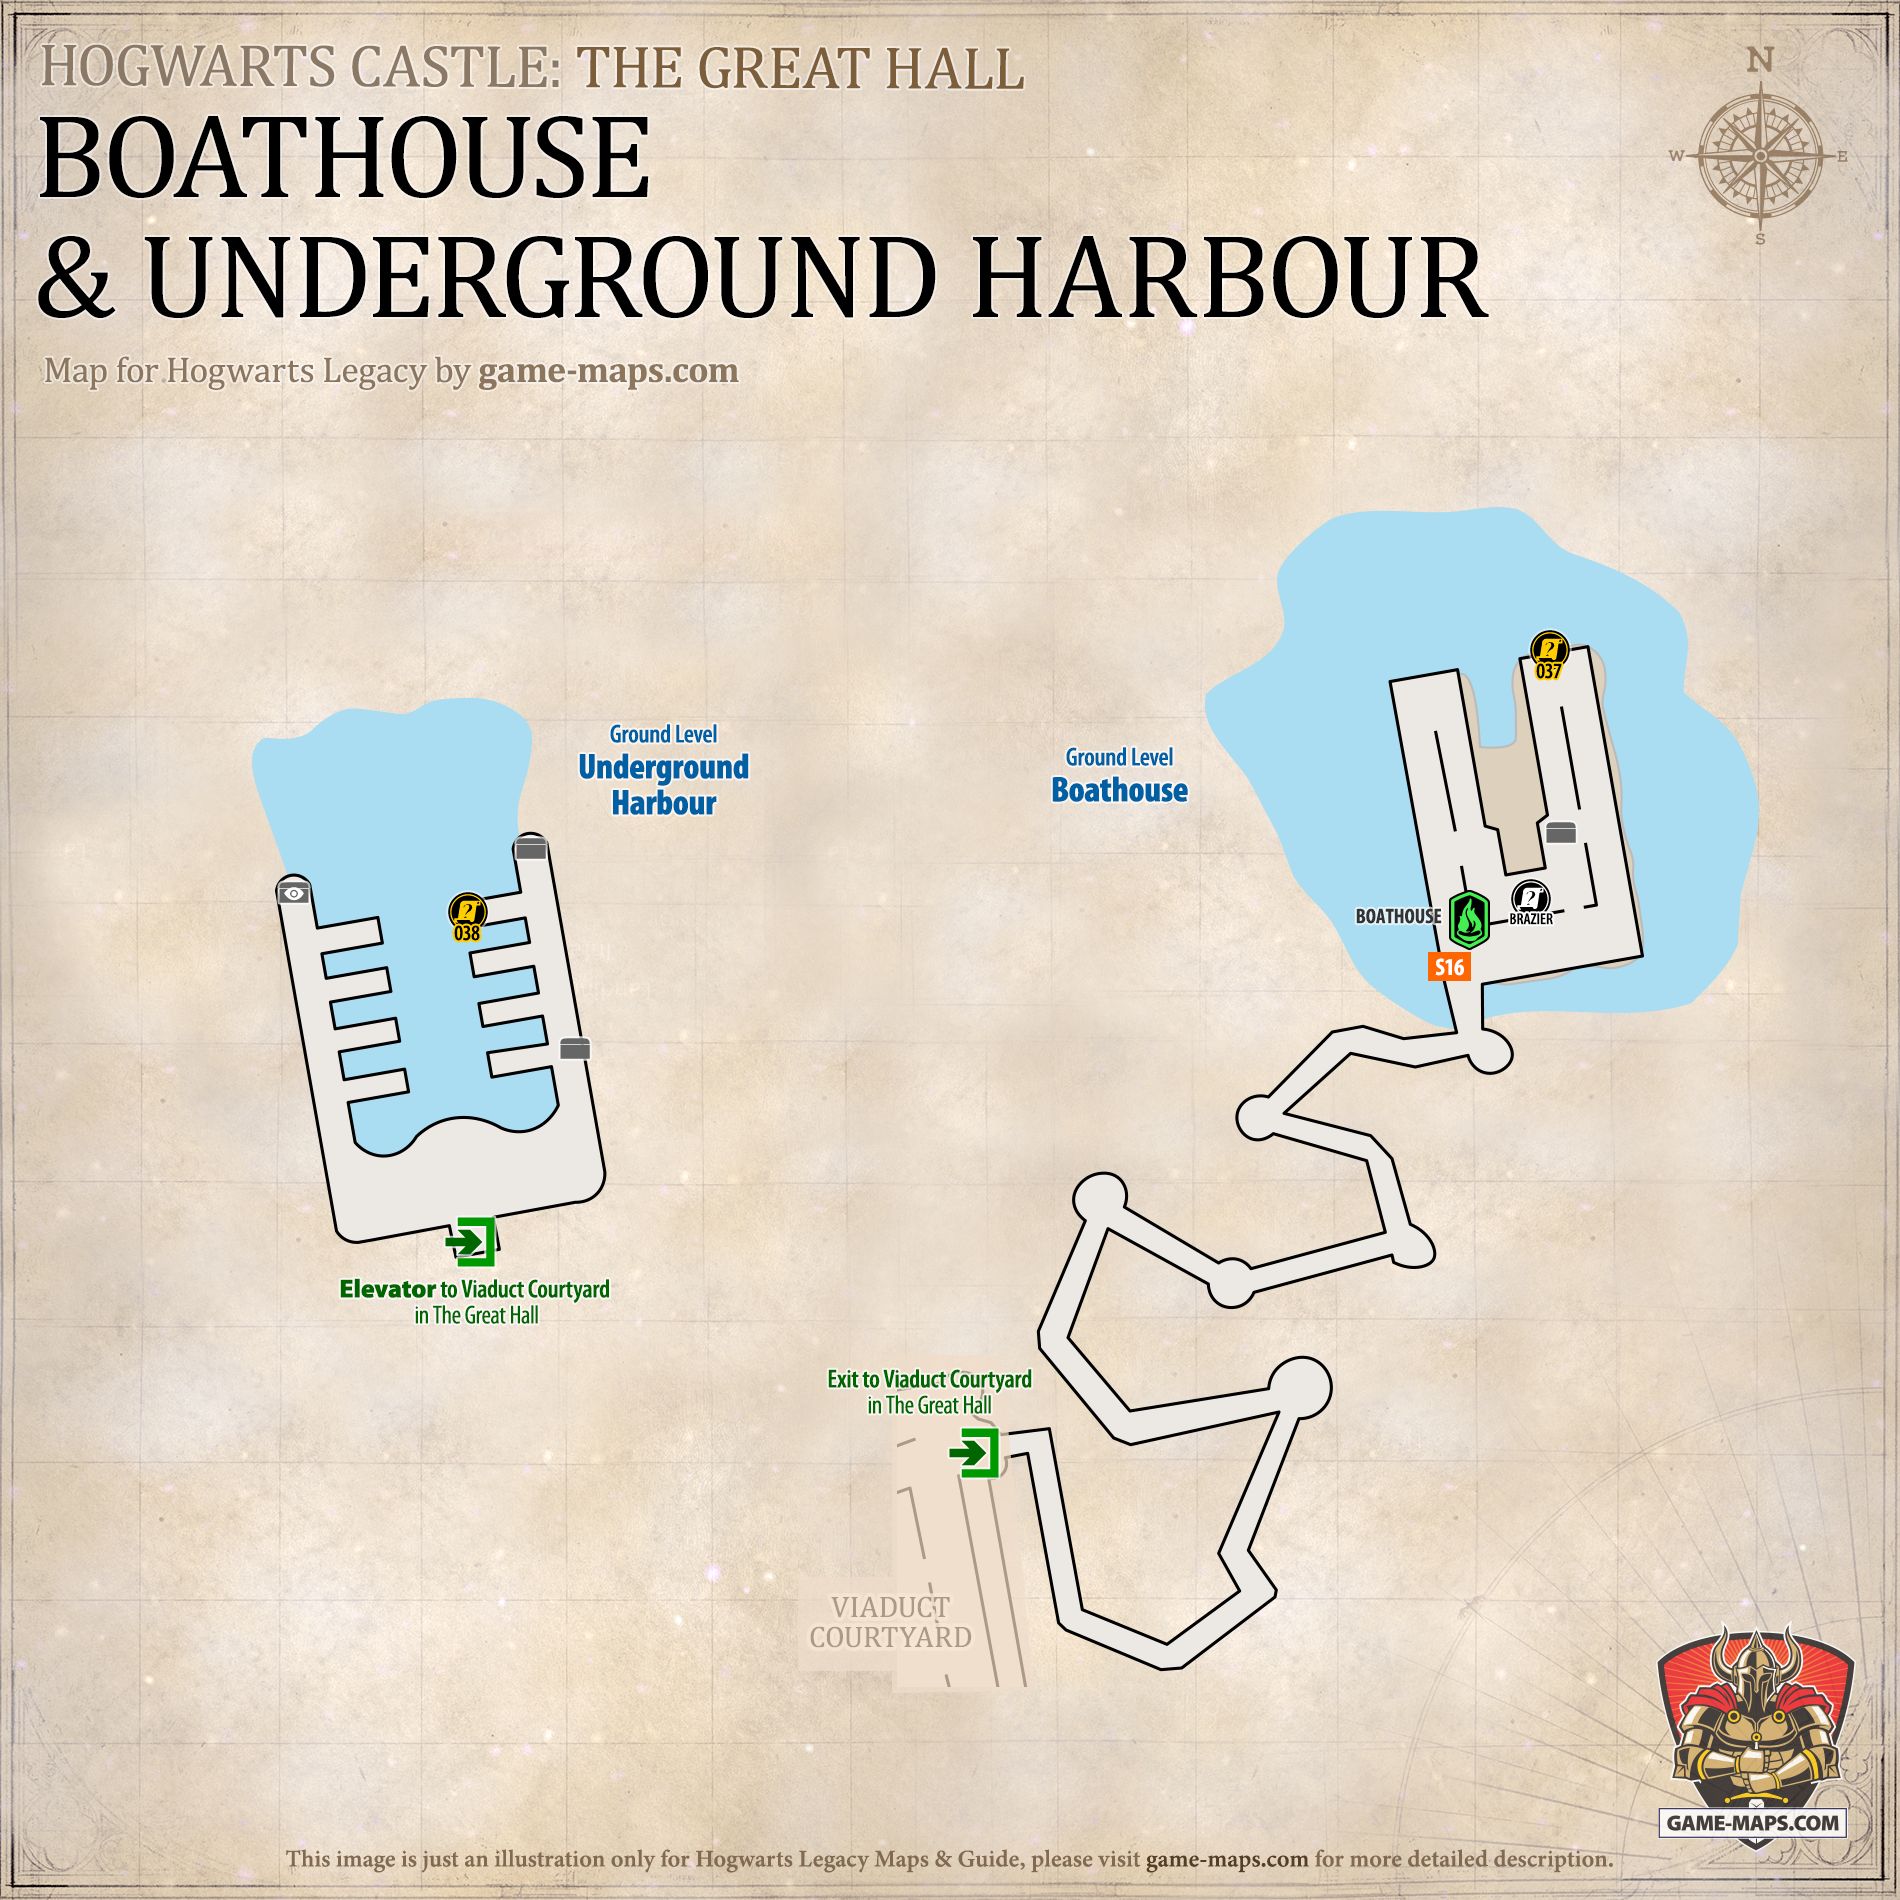 Boathouse & Underground Harbour Hogwarts Legacy